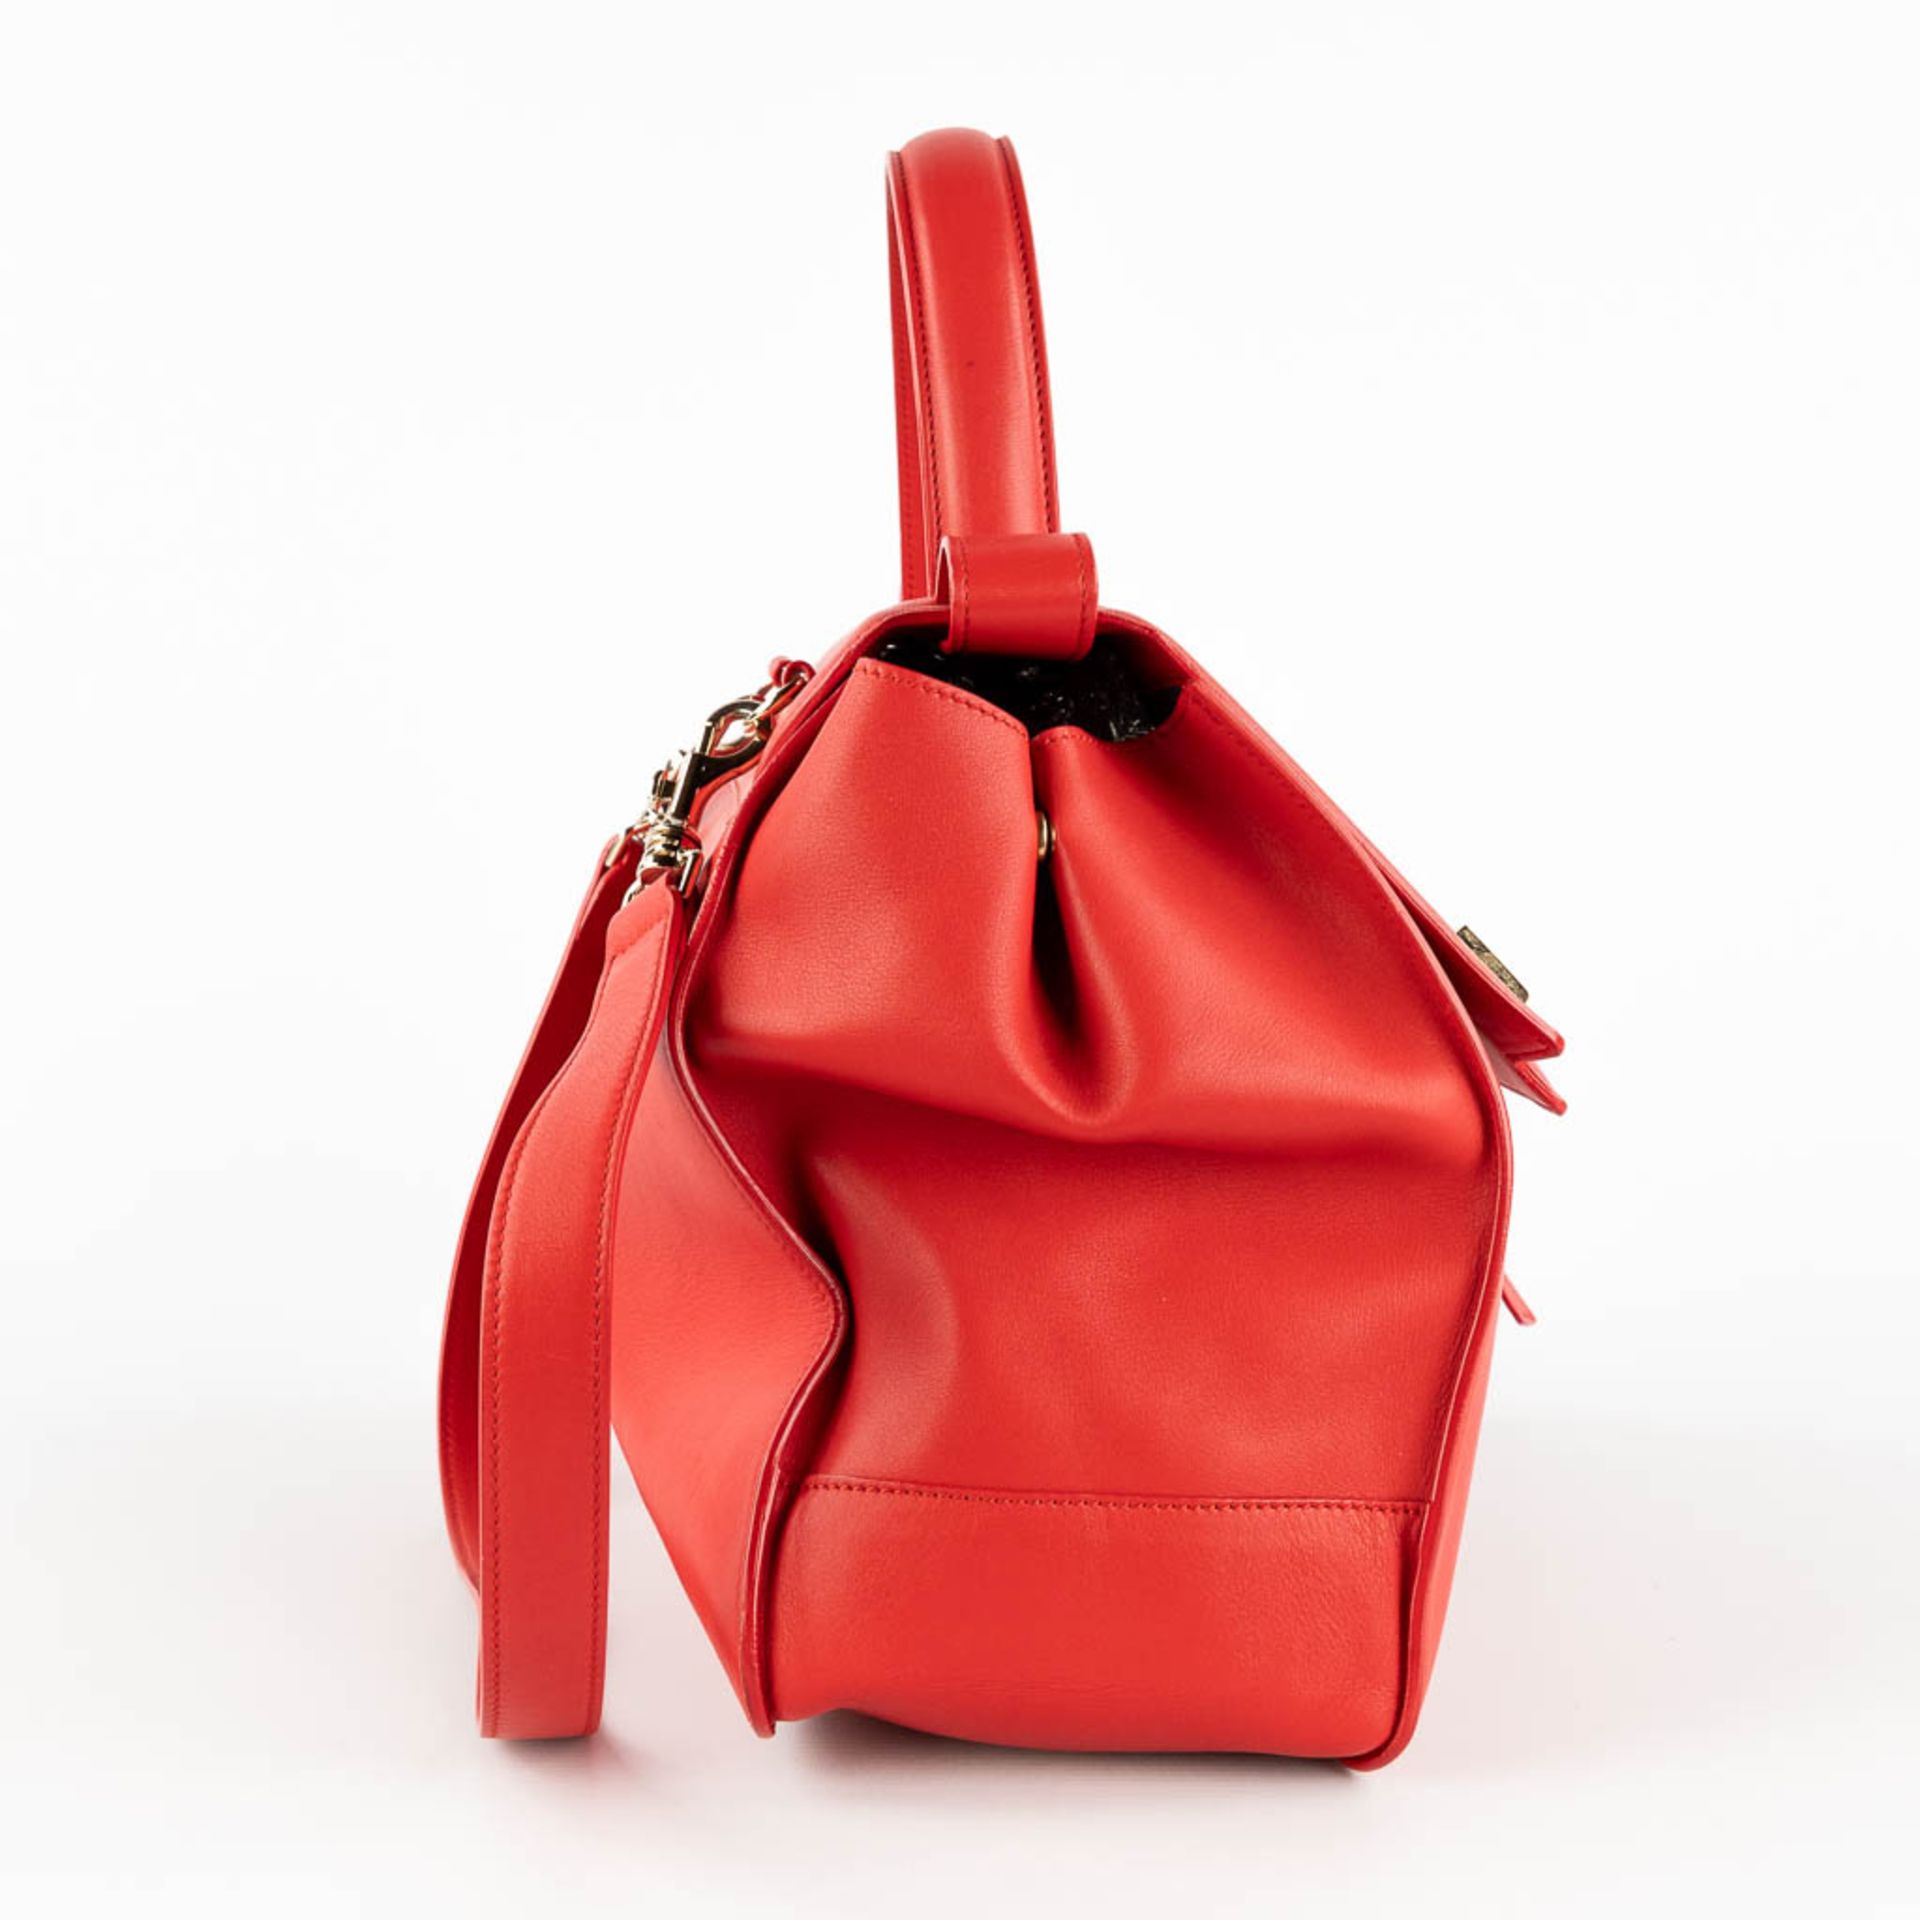 Escada, a handbag made of red leather. (W:33 x H:28 cm) - Image 6 of 17